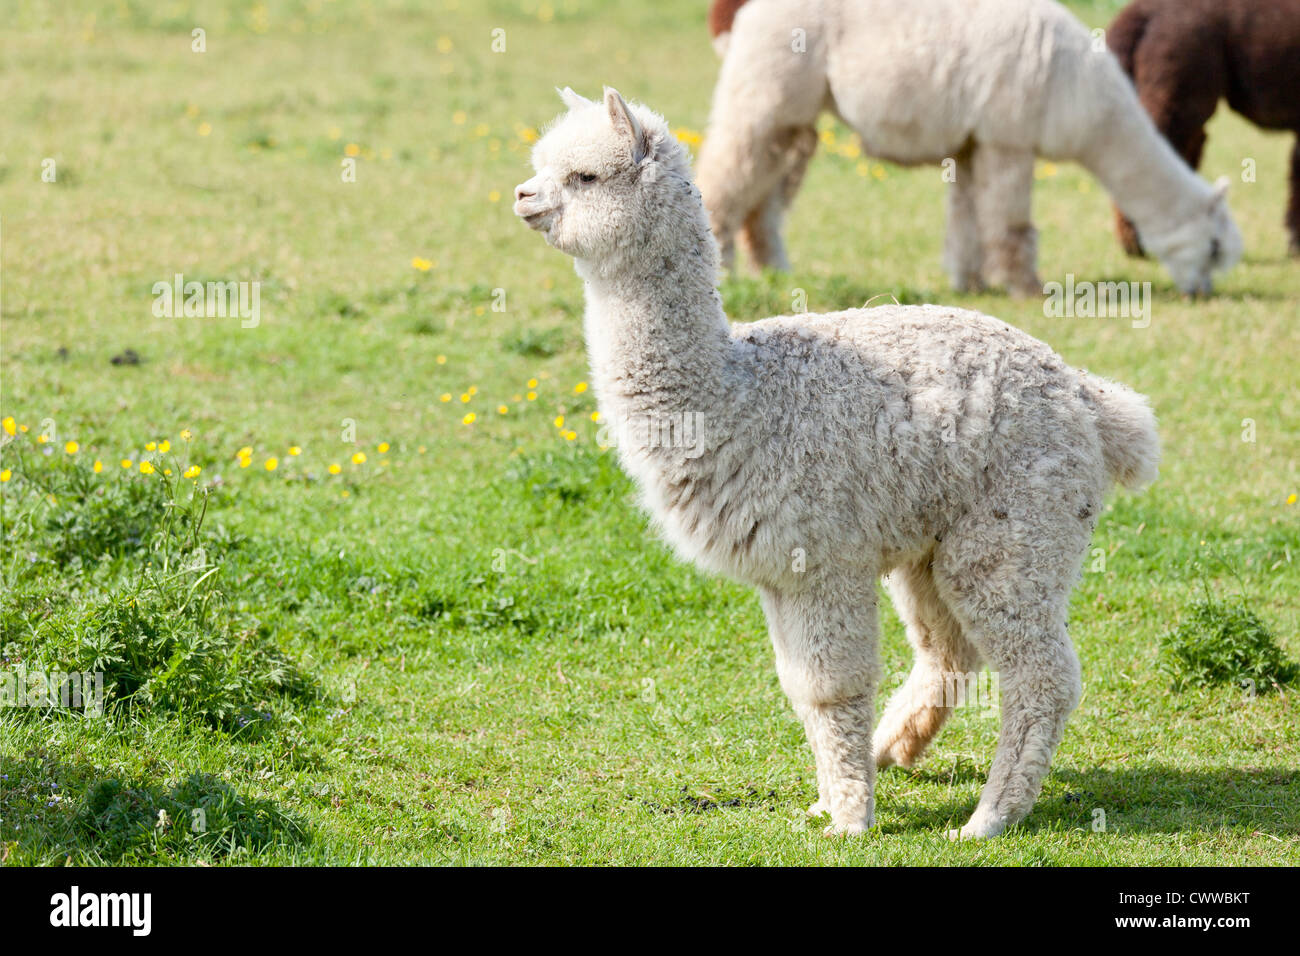 Baby Alpaca (Cria) Stock Photo